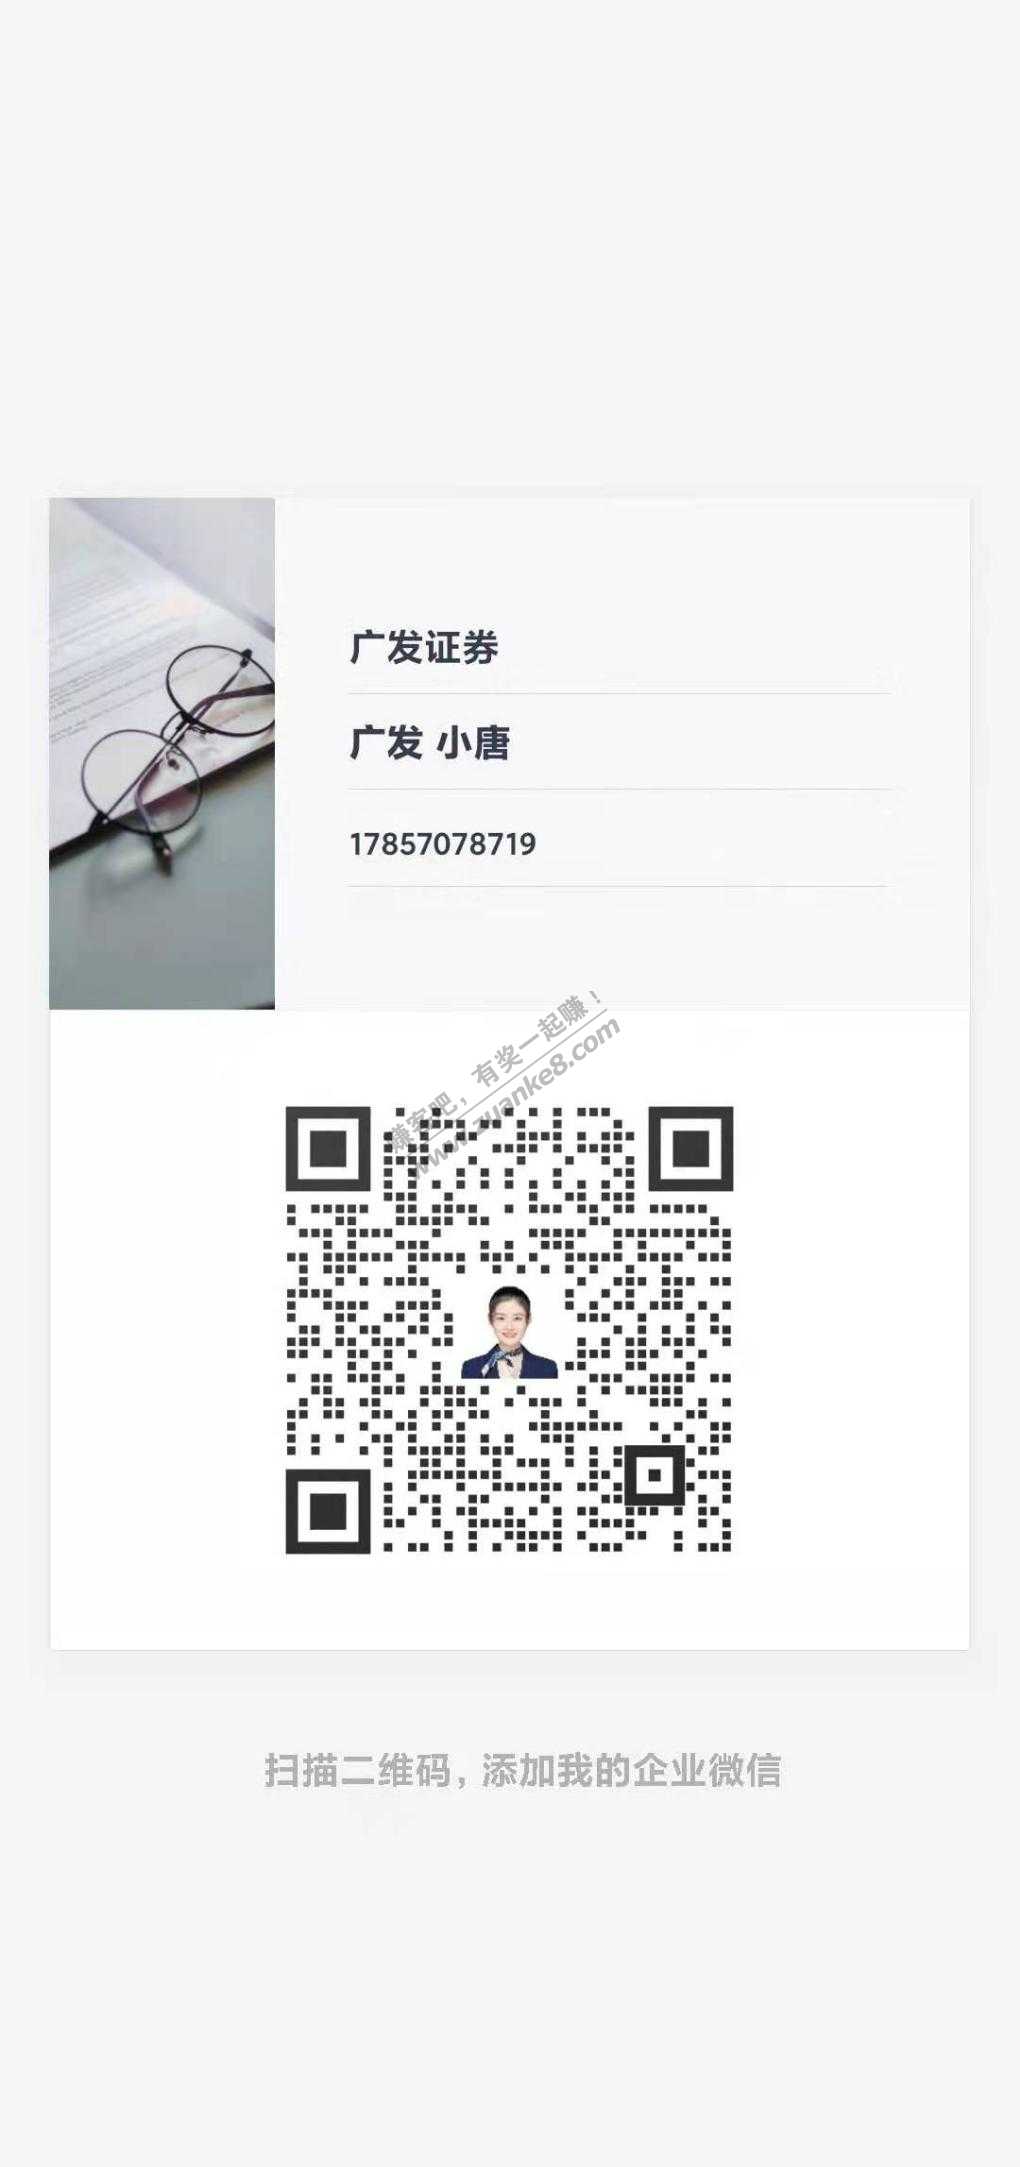 小毛0. 88 加企业微信推送活动-惠小助(52huixz.com)